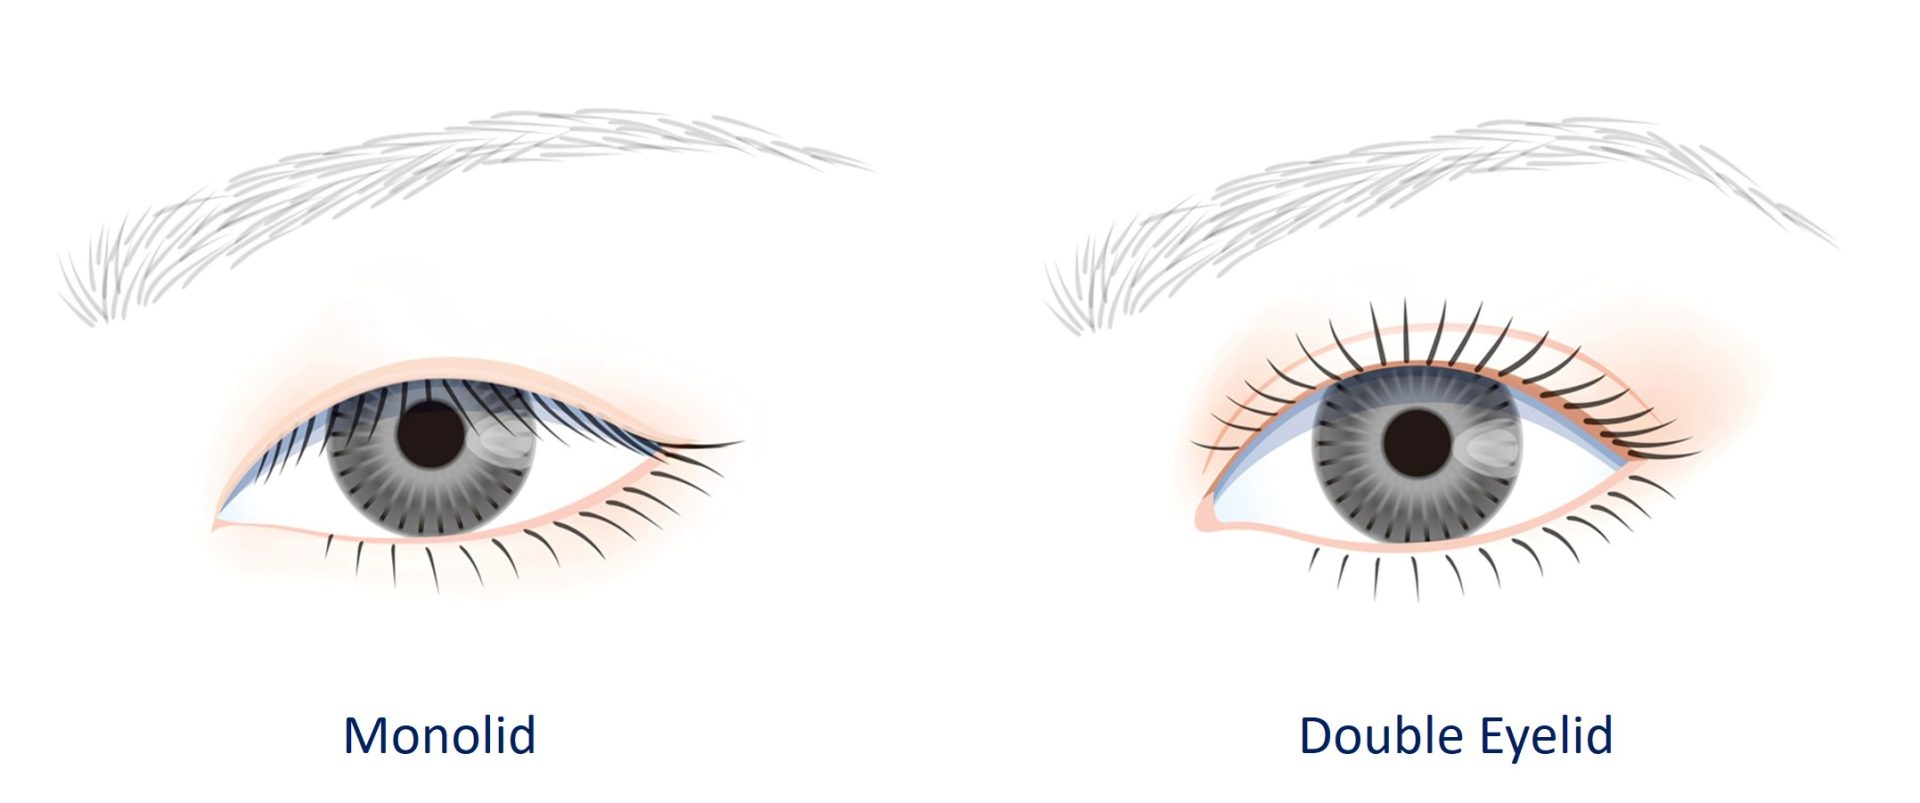 monolid vs double eyelid